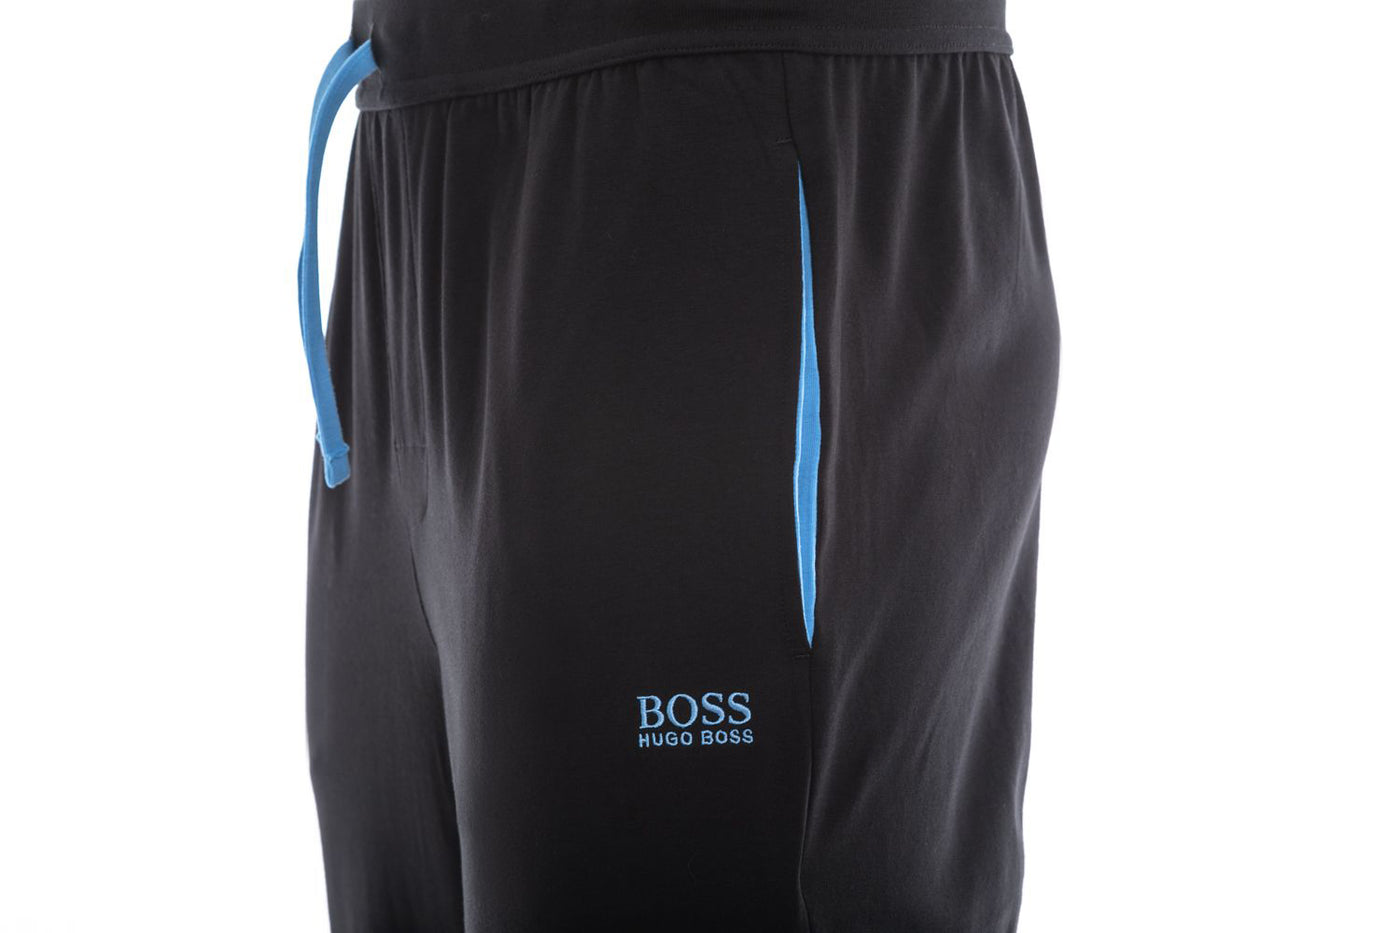 BOSS Mix & Match Sweatpant in Black & Sky Blue Trim